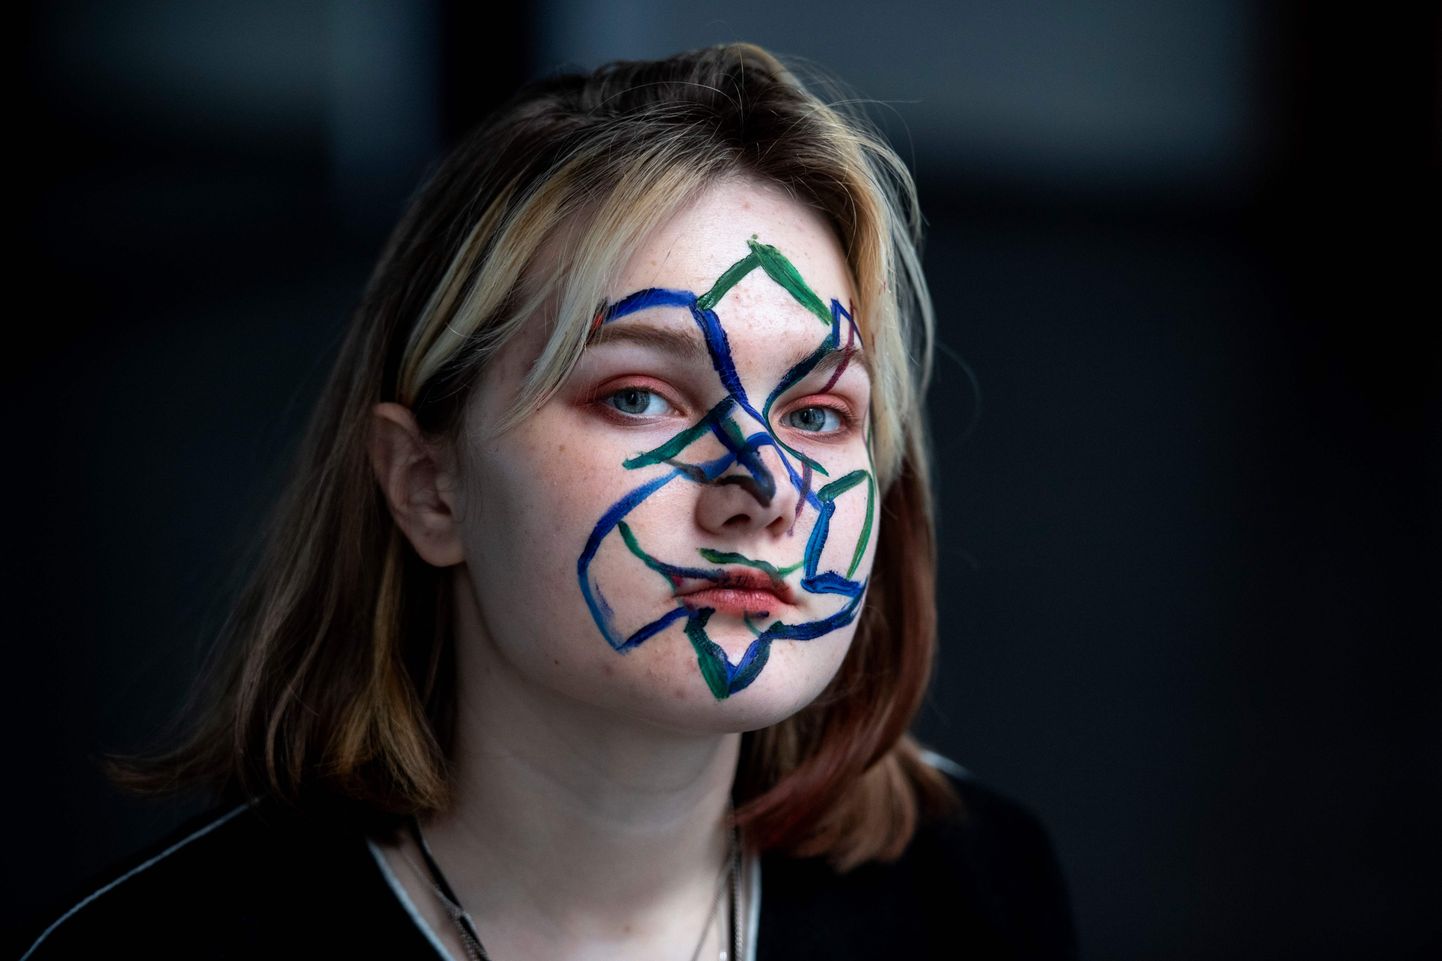 Inimõiguste aktivist Daria Kozlova demonstreerib geomeetrilist näomaalingut, mis peaks segadusse ajama näotuvastusalgoritme. Moskva valvekaamerate võrgustikku on kasutatud ka koroonaviiruse leviku peatamiseks. Foto tehtud 16. veebruaril 2020.